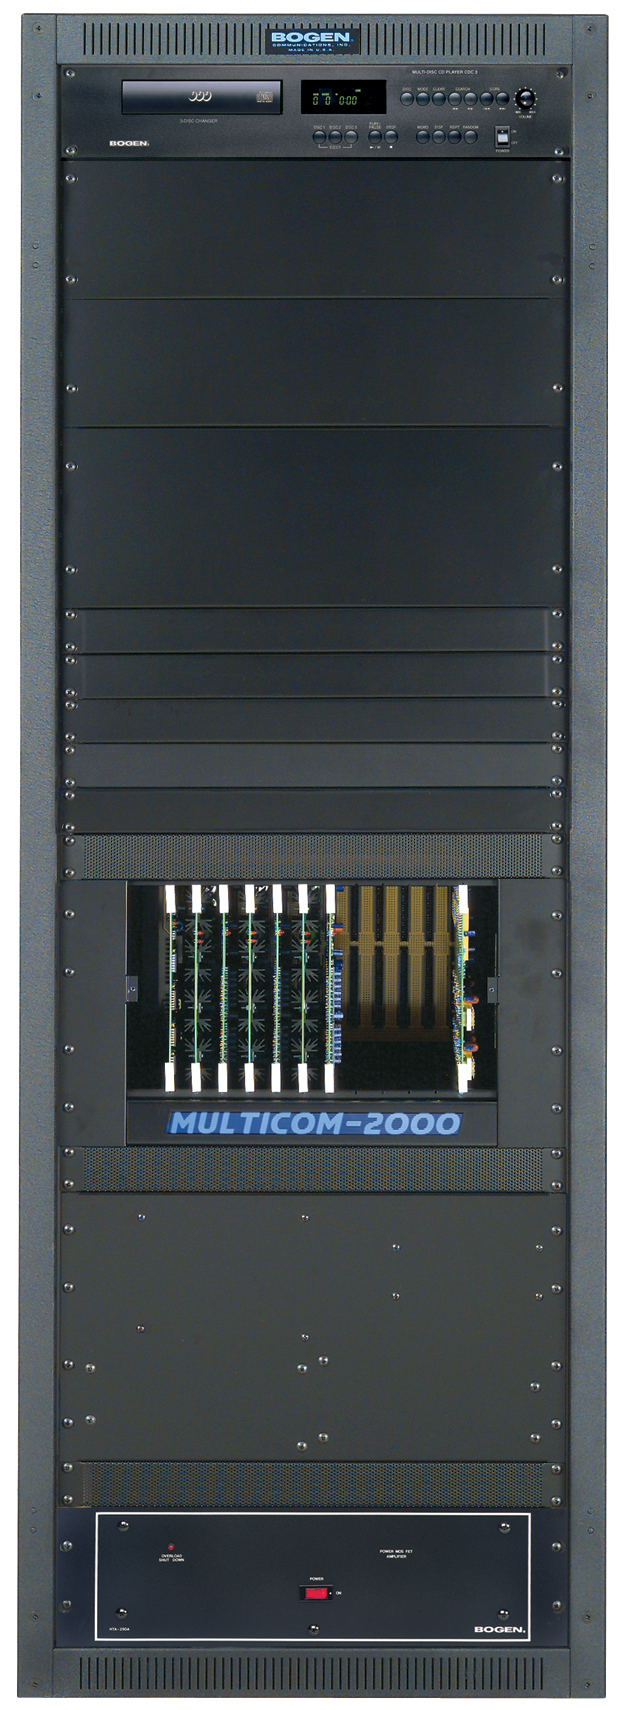 Multi-Comm 2000 Graphic